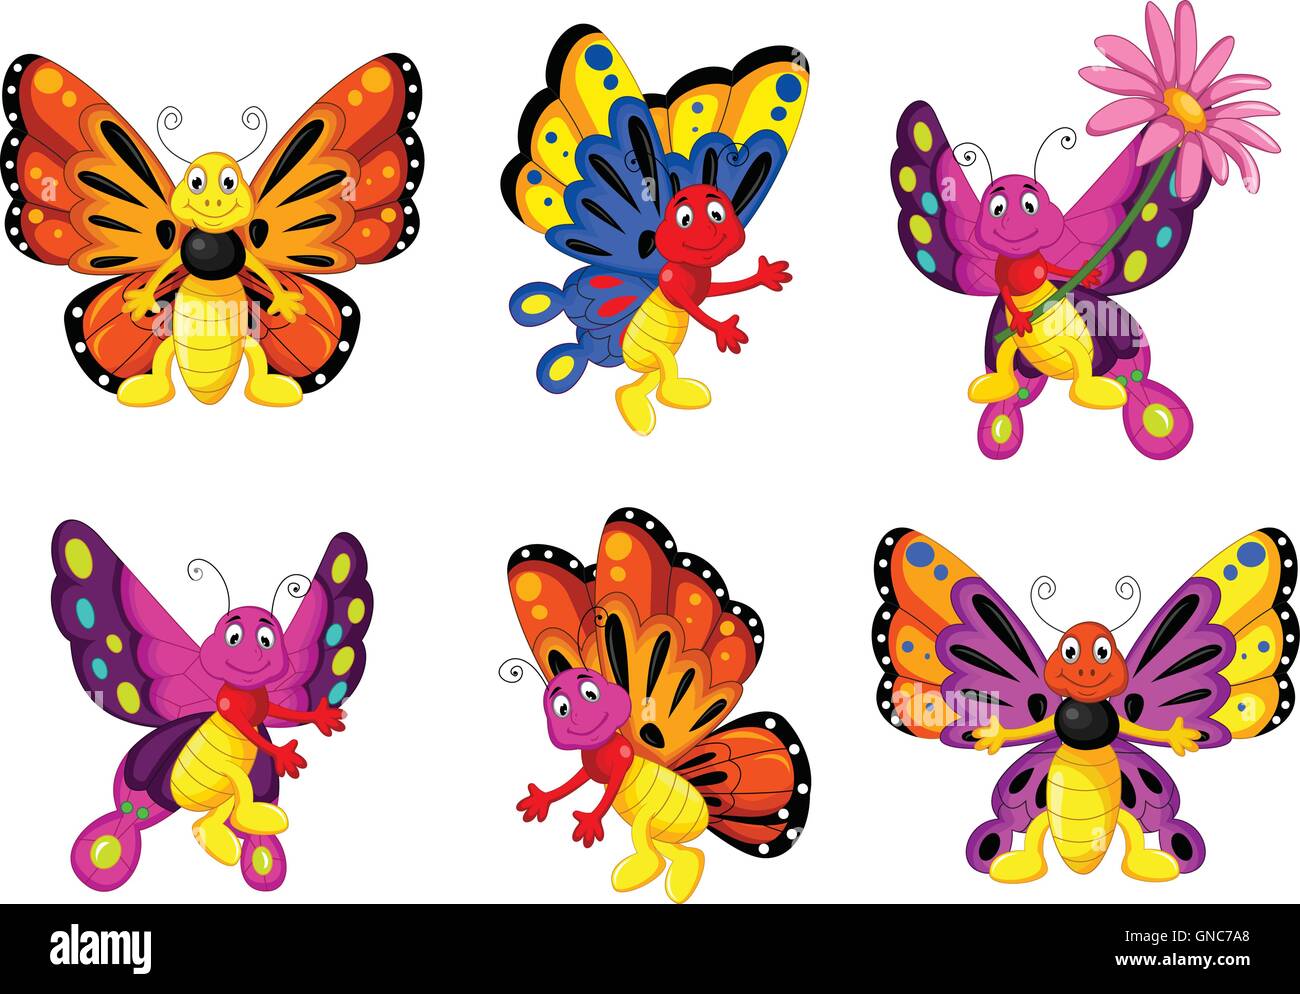 Бабочки для вырезания цветные мультяшки